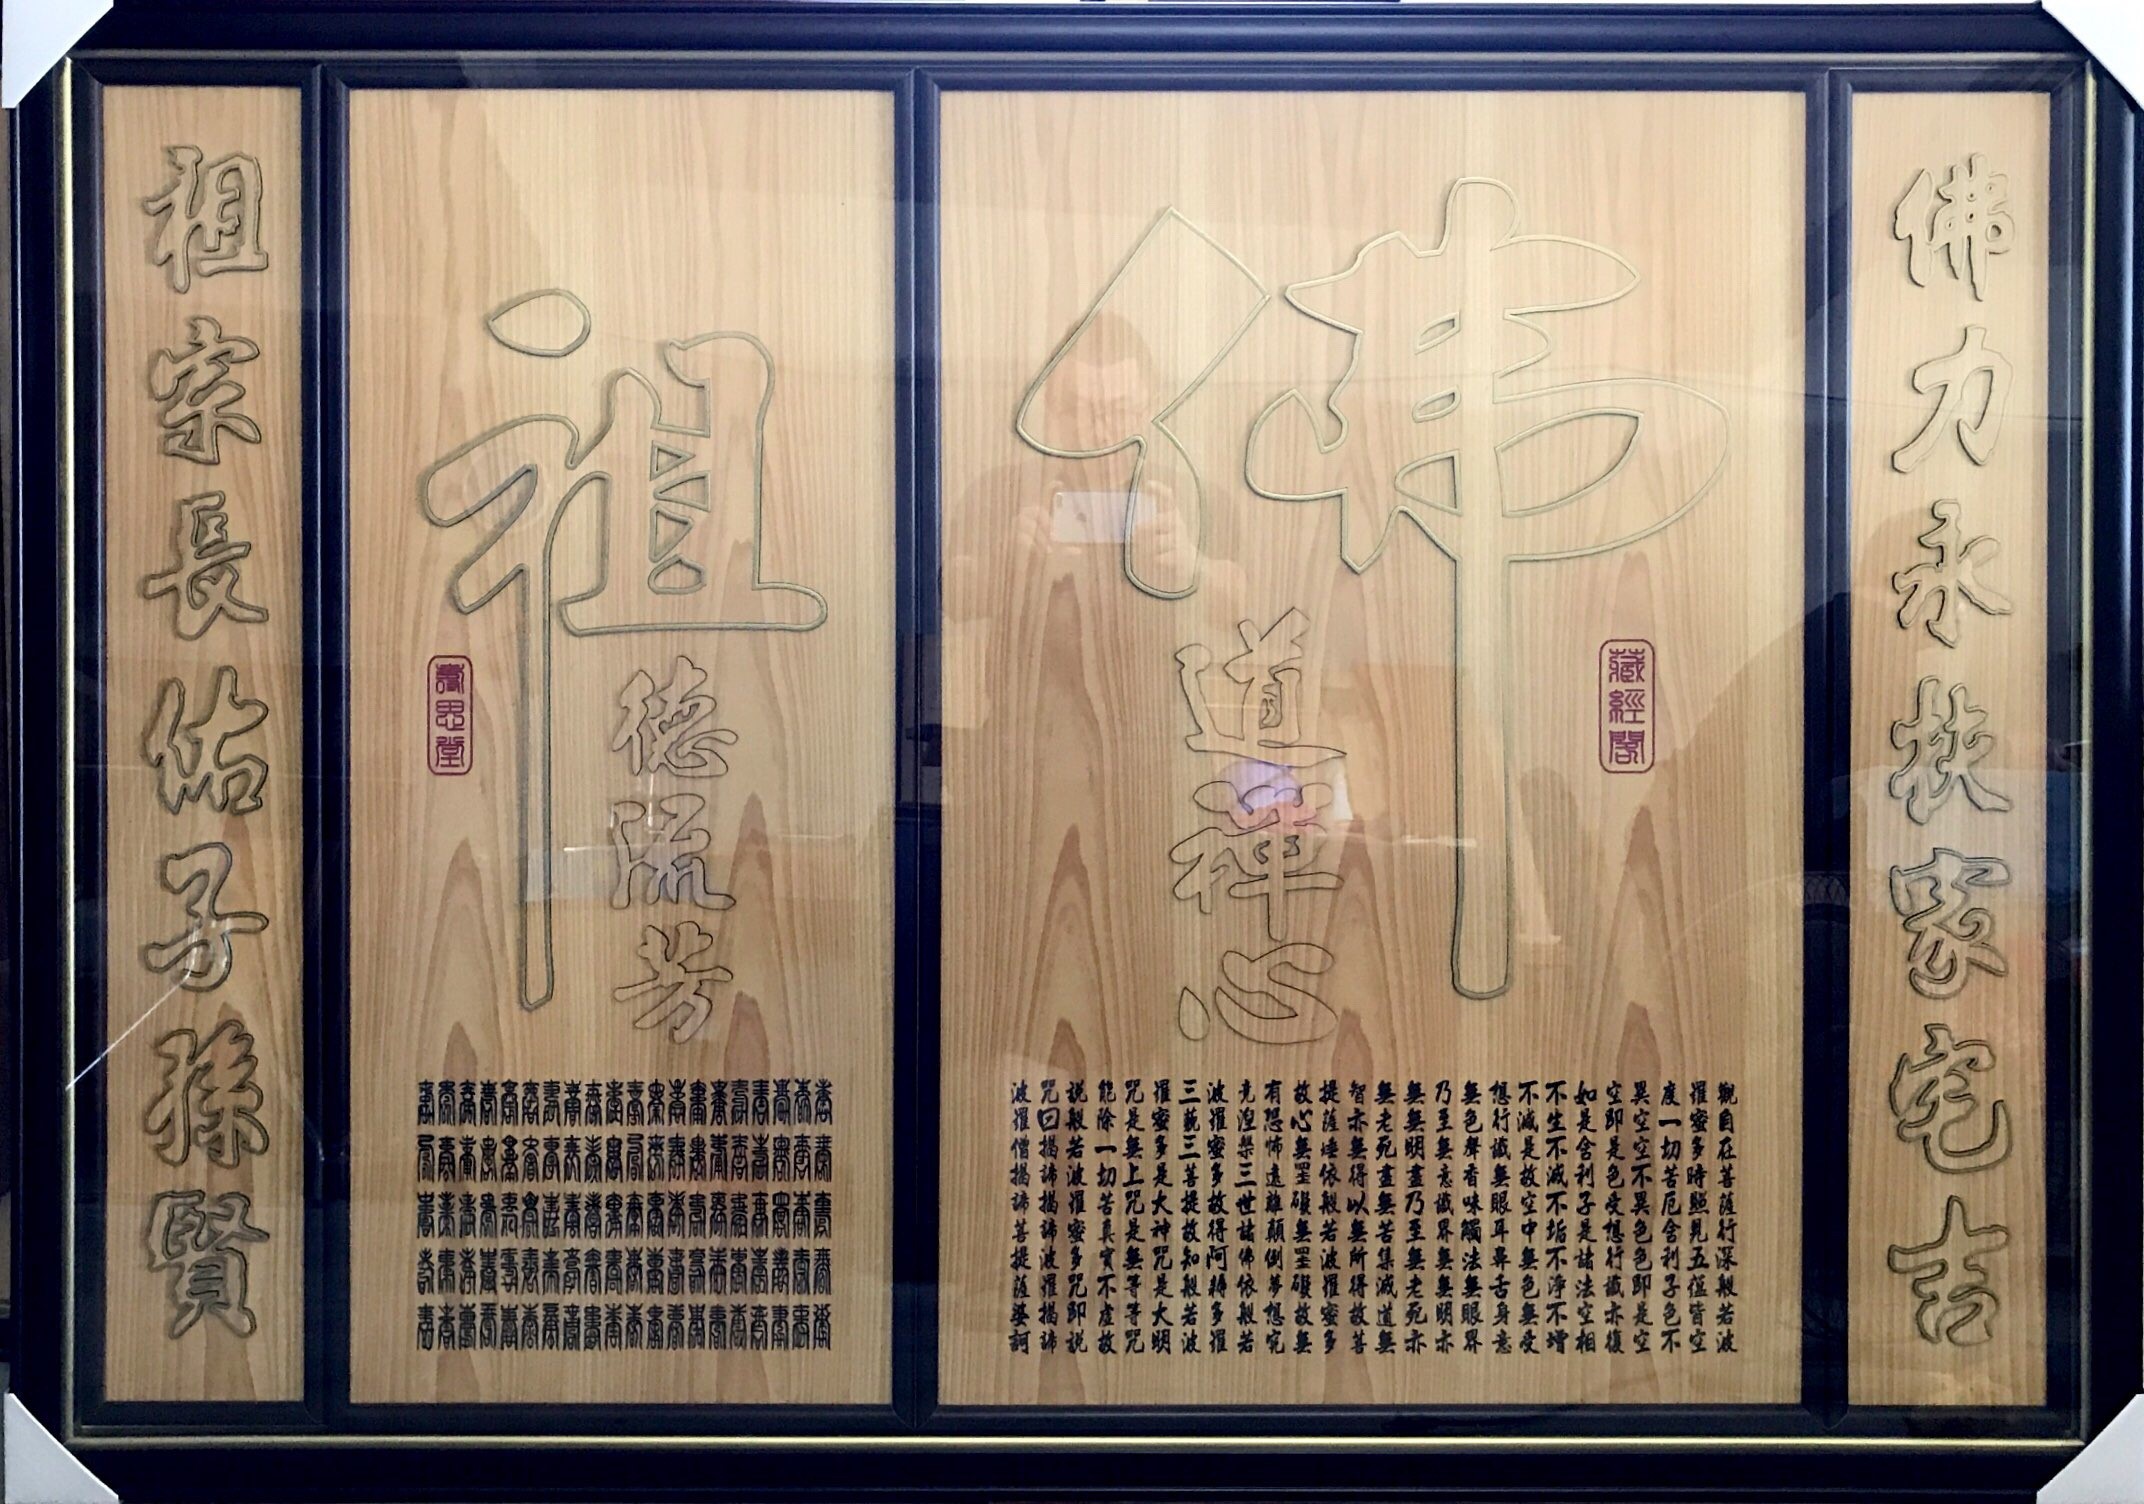 神桌神彩-南檜佛道禪心-滿版框-5尺1